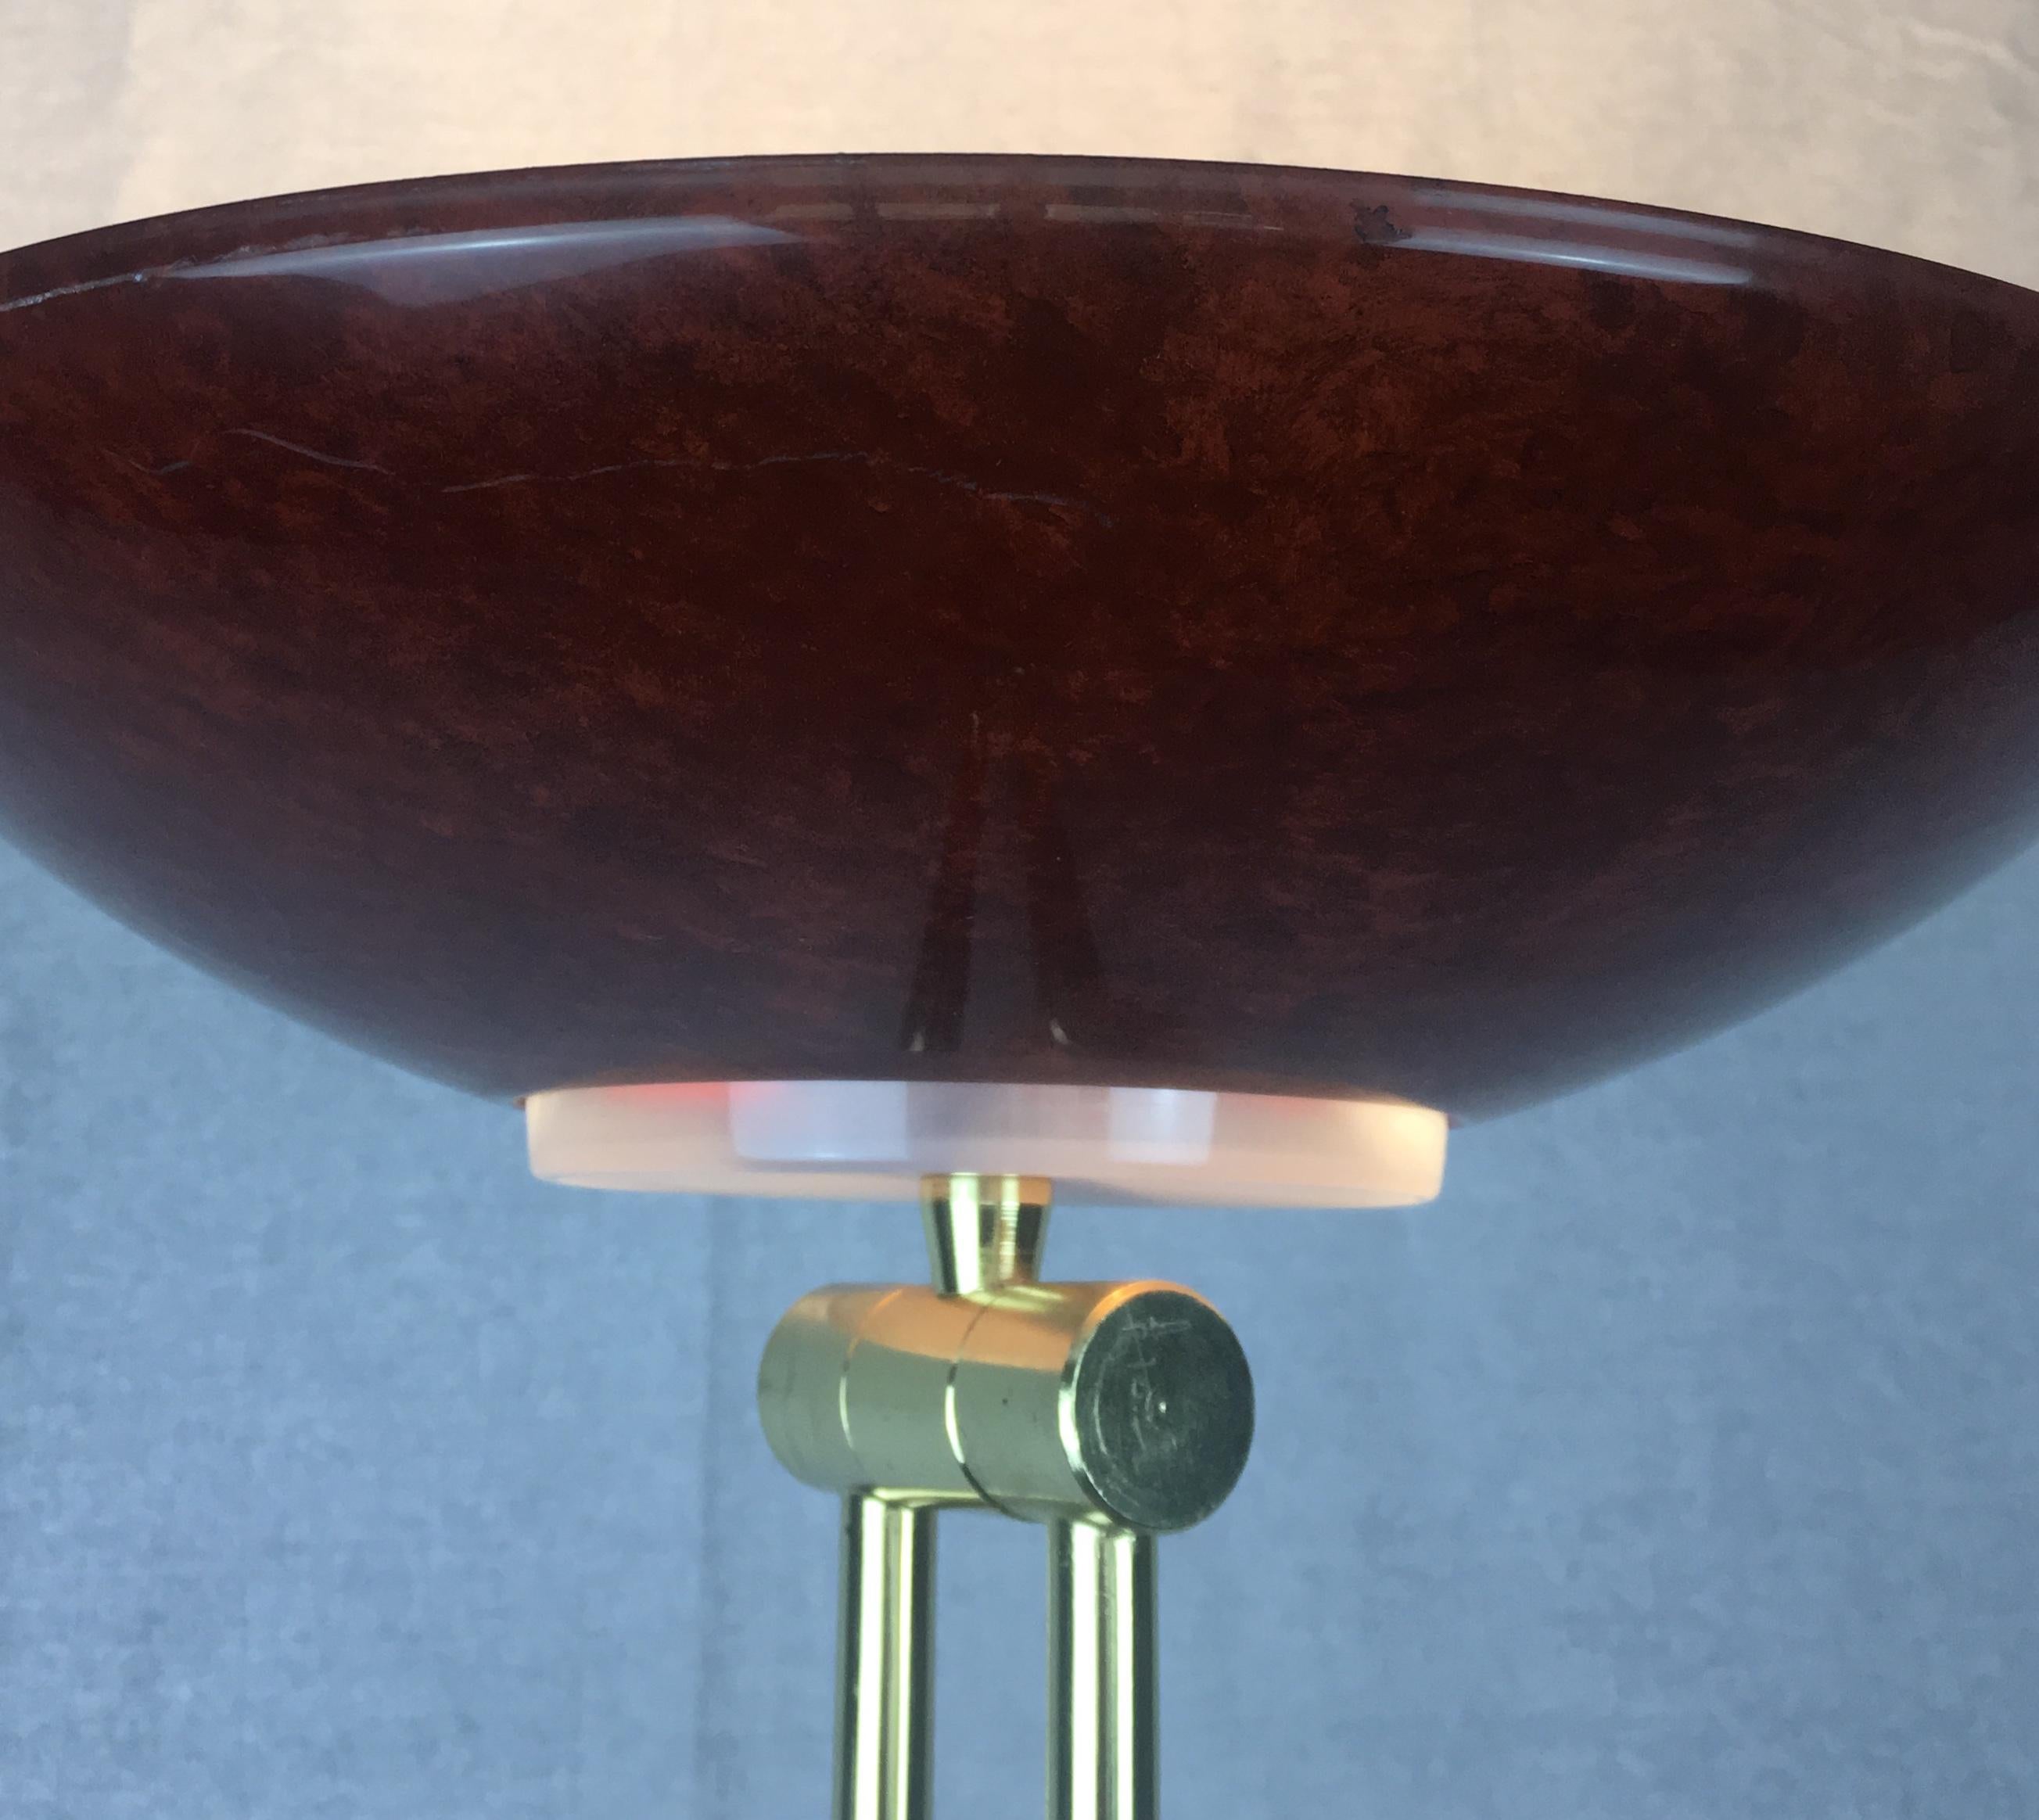 Remarquable lampadaire articulé postmoderne, datant des années 1980-1990. Cette lampe sur pied sculpturale en métal, fabriquée par un artisan français, est agrémentée d'accessoires en laiton et conçue avec des joints articulés, permettant un